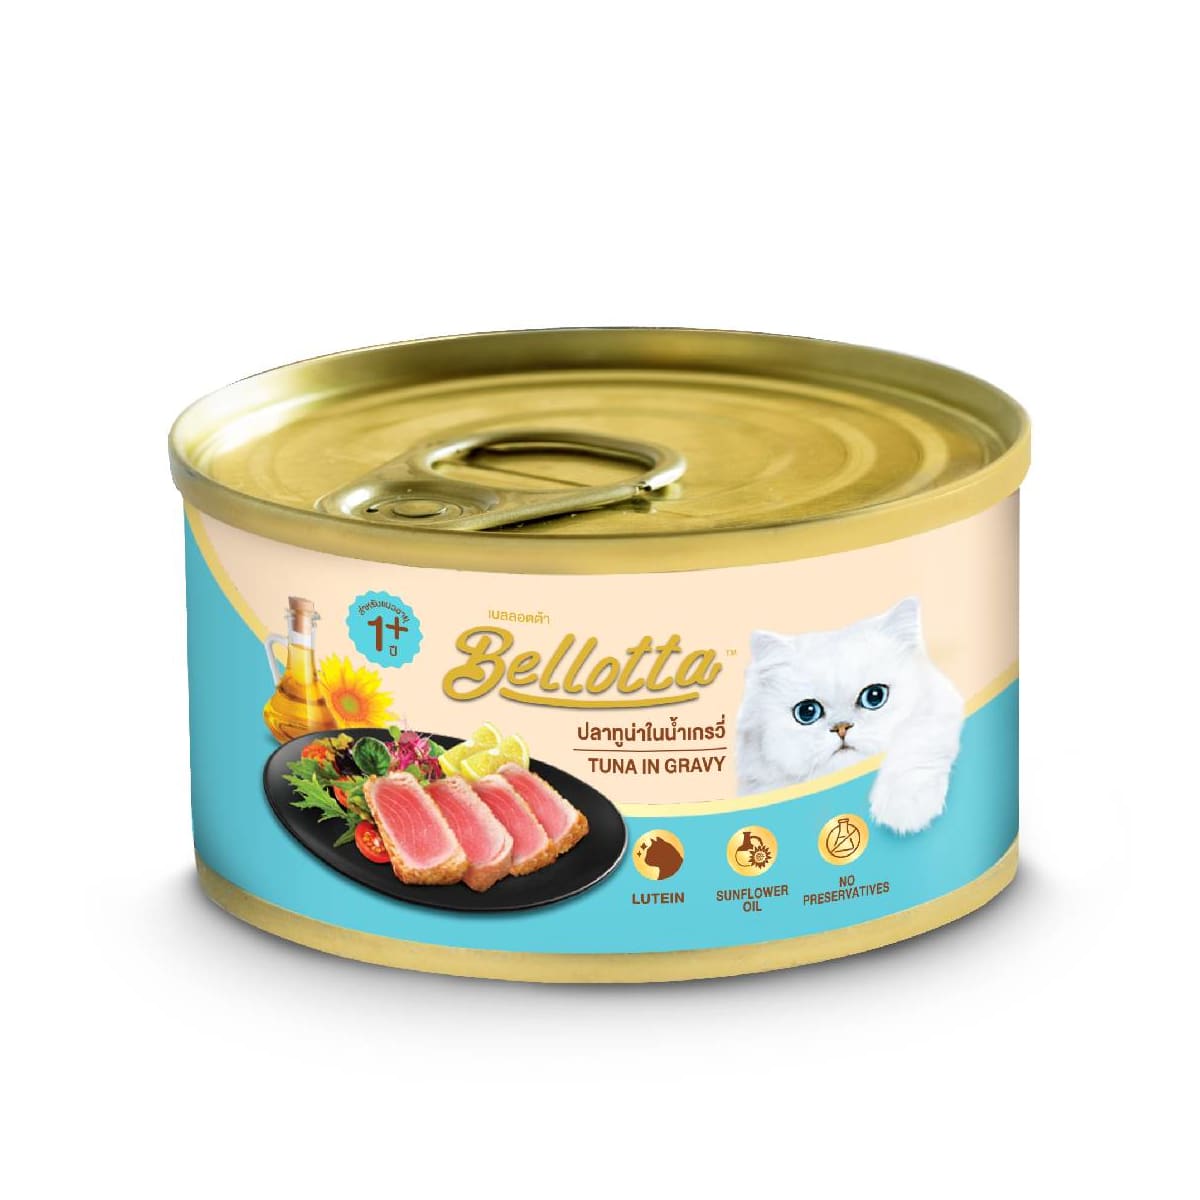 Bellotta เบลลอตต้า  อาหารแมวแบบเปียกกระป๋อง สูตรทูน่าในเกรวี่ สำหรับแมวโตทุกสายพันธุ์  85 g_1